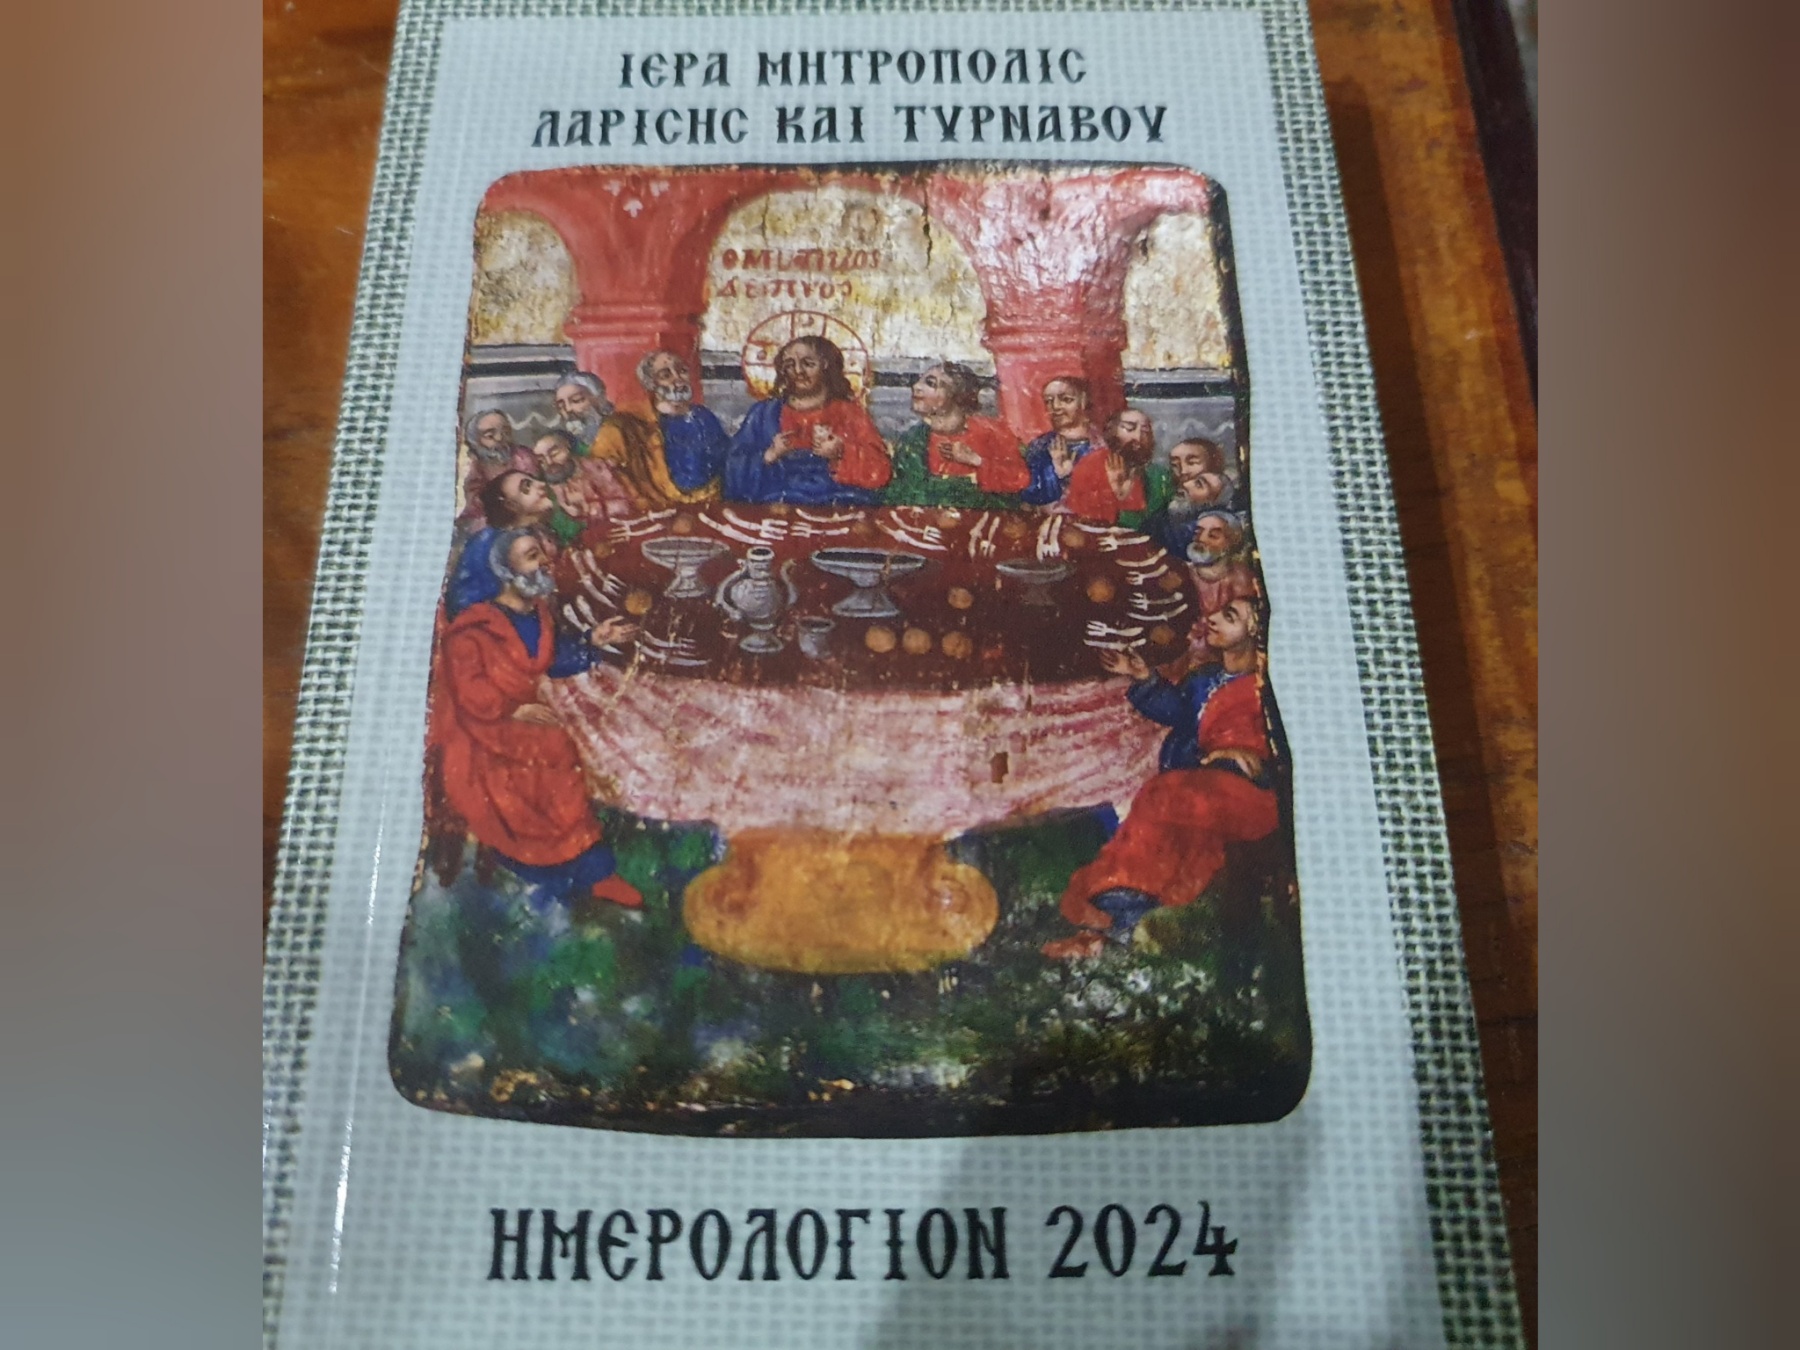 Εικόνα από την Παναγία Φανερωμένη Τυρνάβου κοσμεί το εξώφυλλο του Ημερολογίου 2024